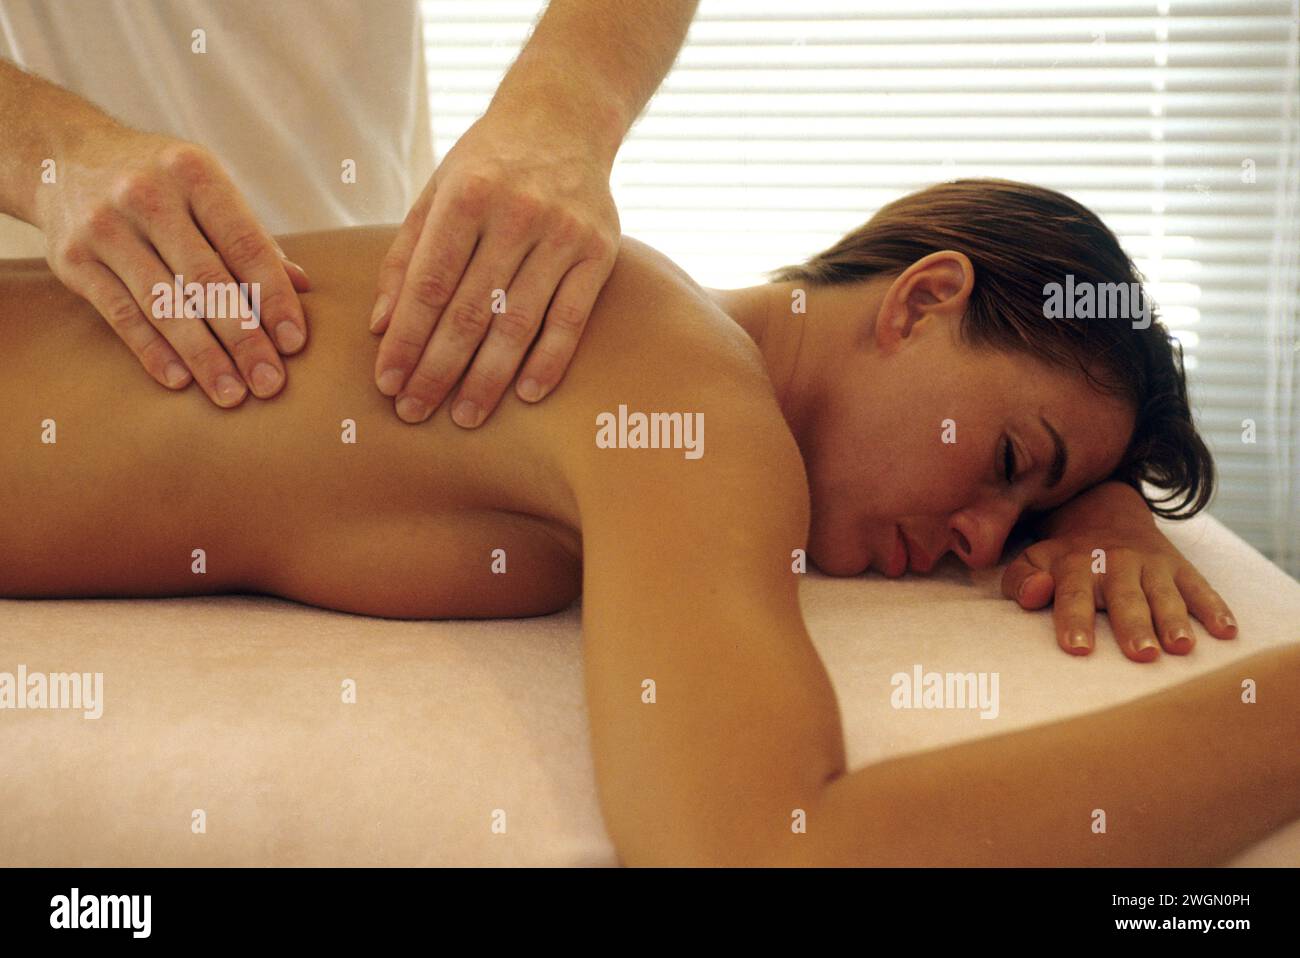 grazioso tavolo da massaggio spa naturale per la schiena con i capelli di auburn e le mani di una massaggiatrice con luce rilassante Foto Stock